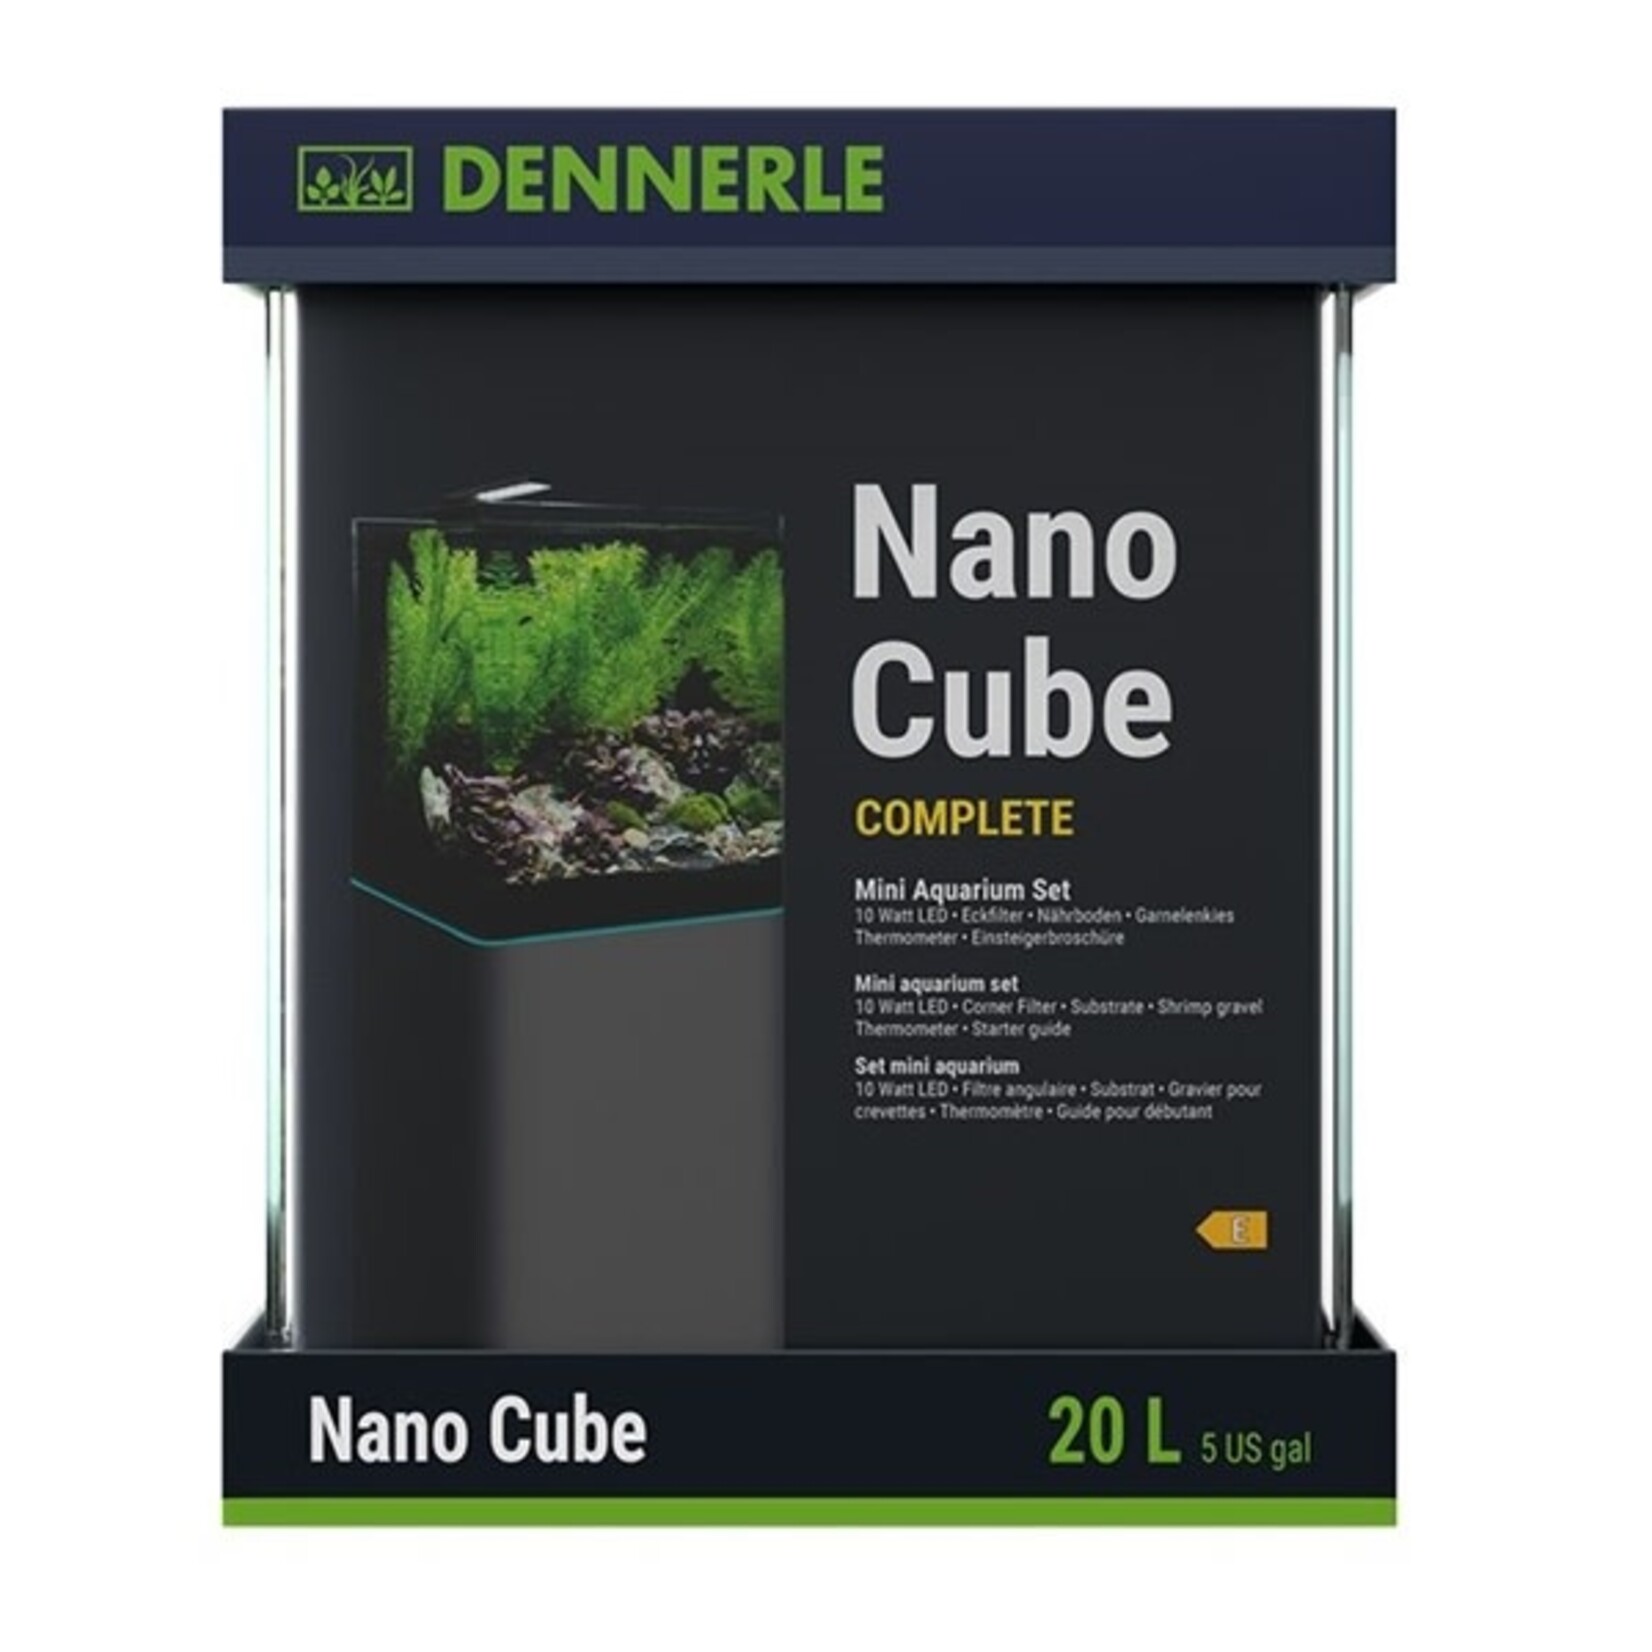 Dennerle nano cube complete 20 l